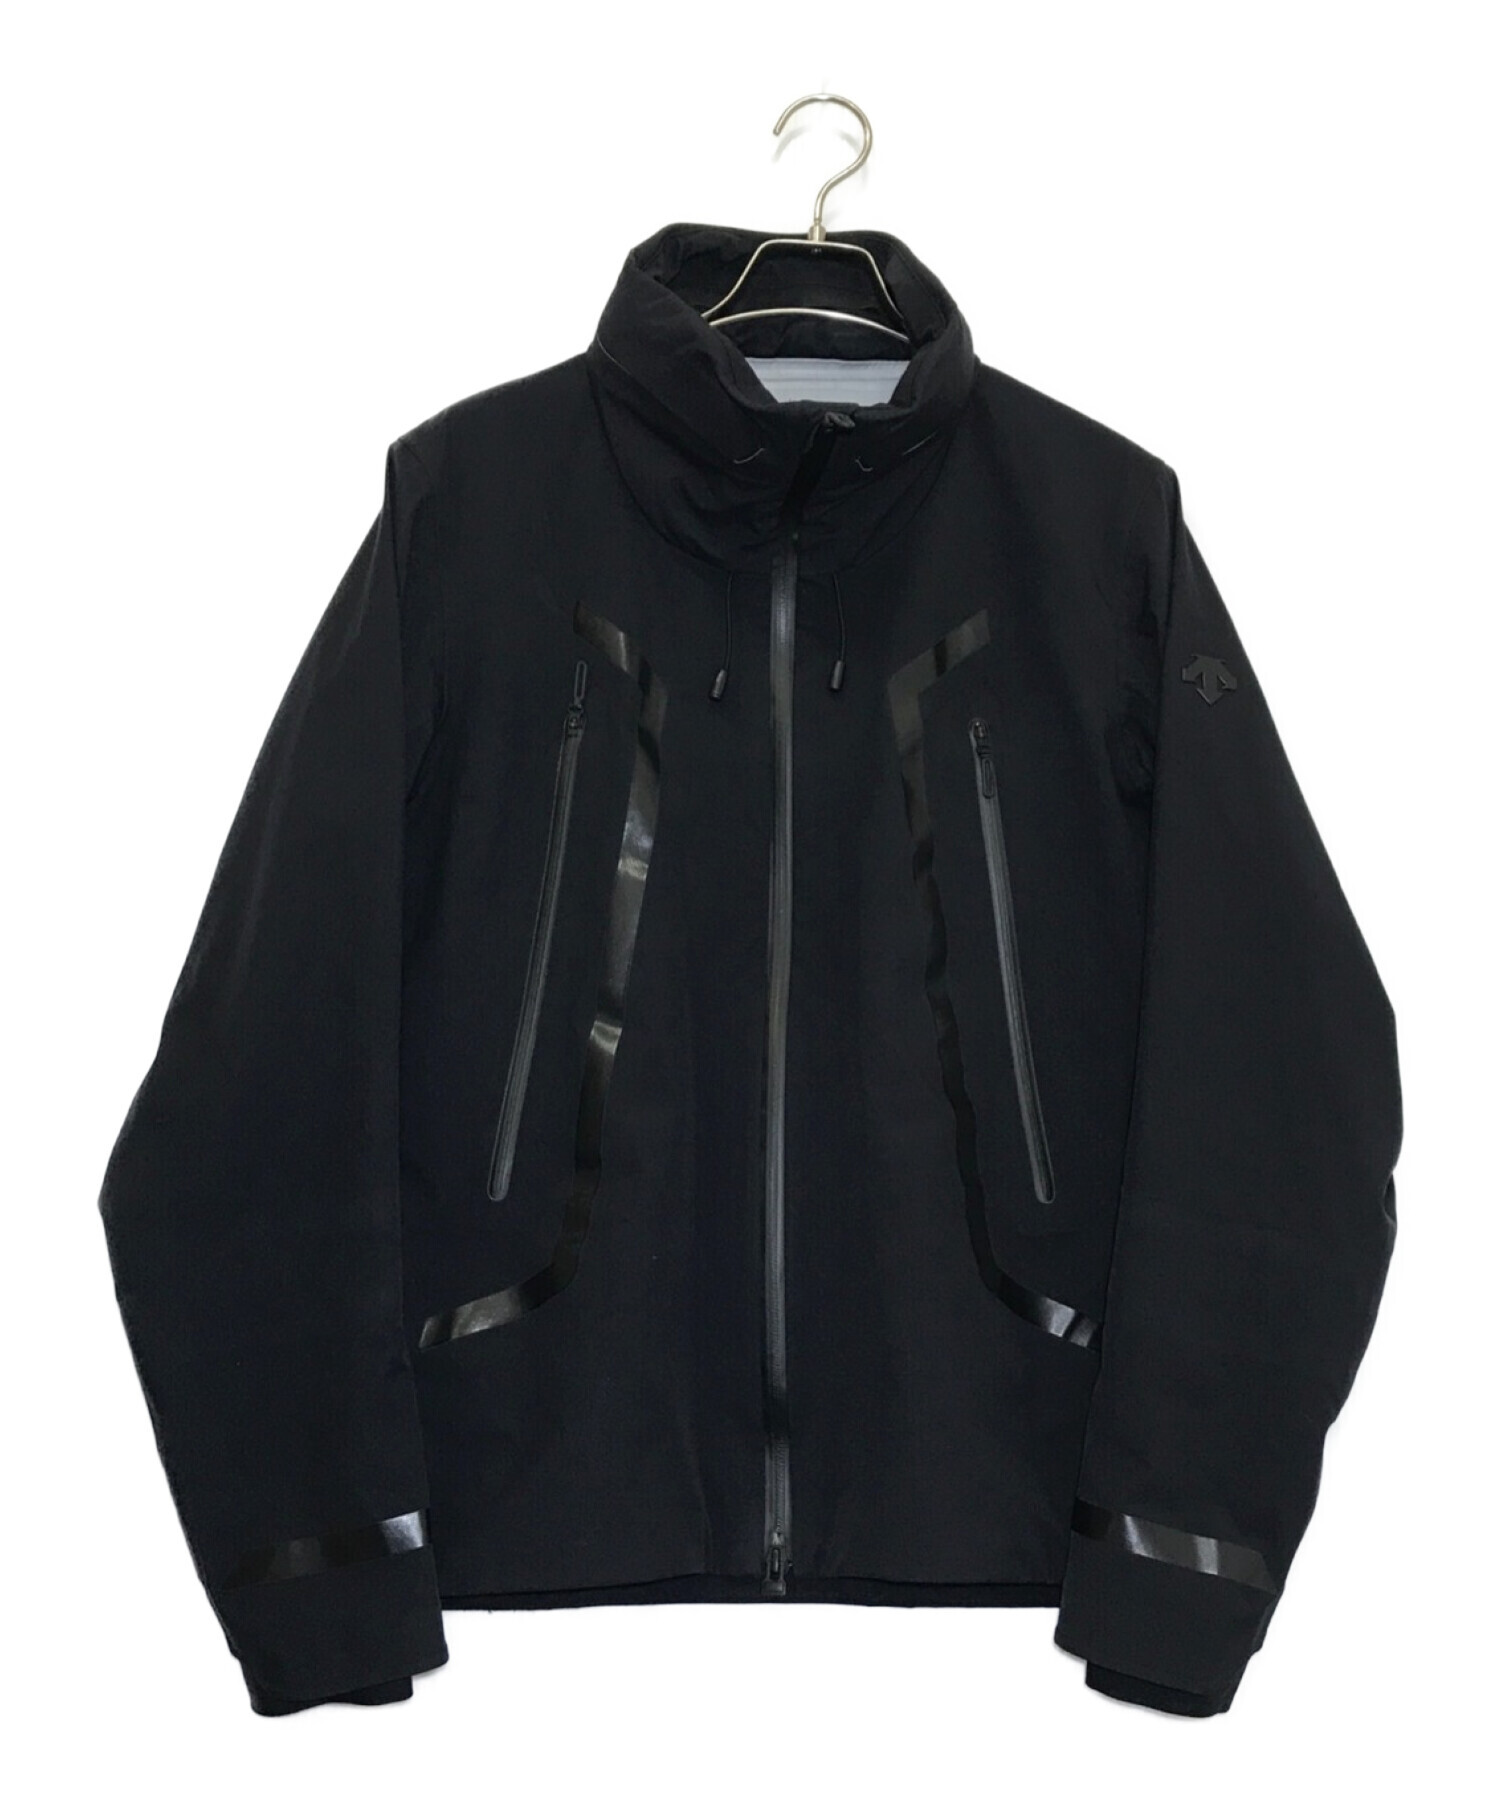 DESCENTE (デサント) ストリームラインハードシェルジャケット ブラック サイズ:M